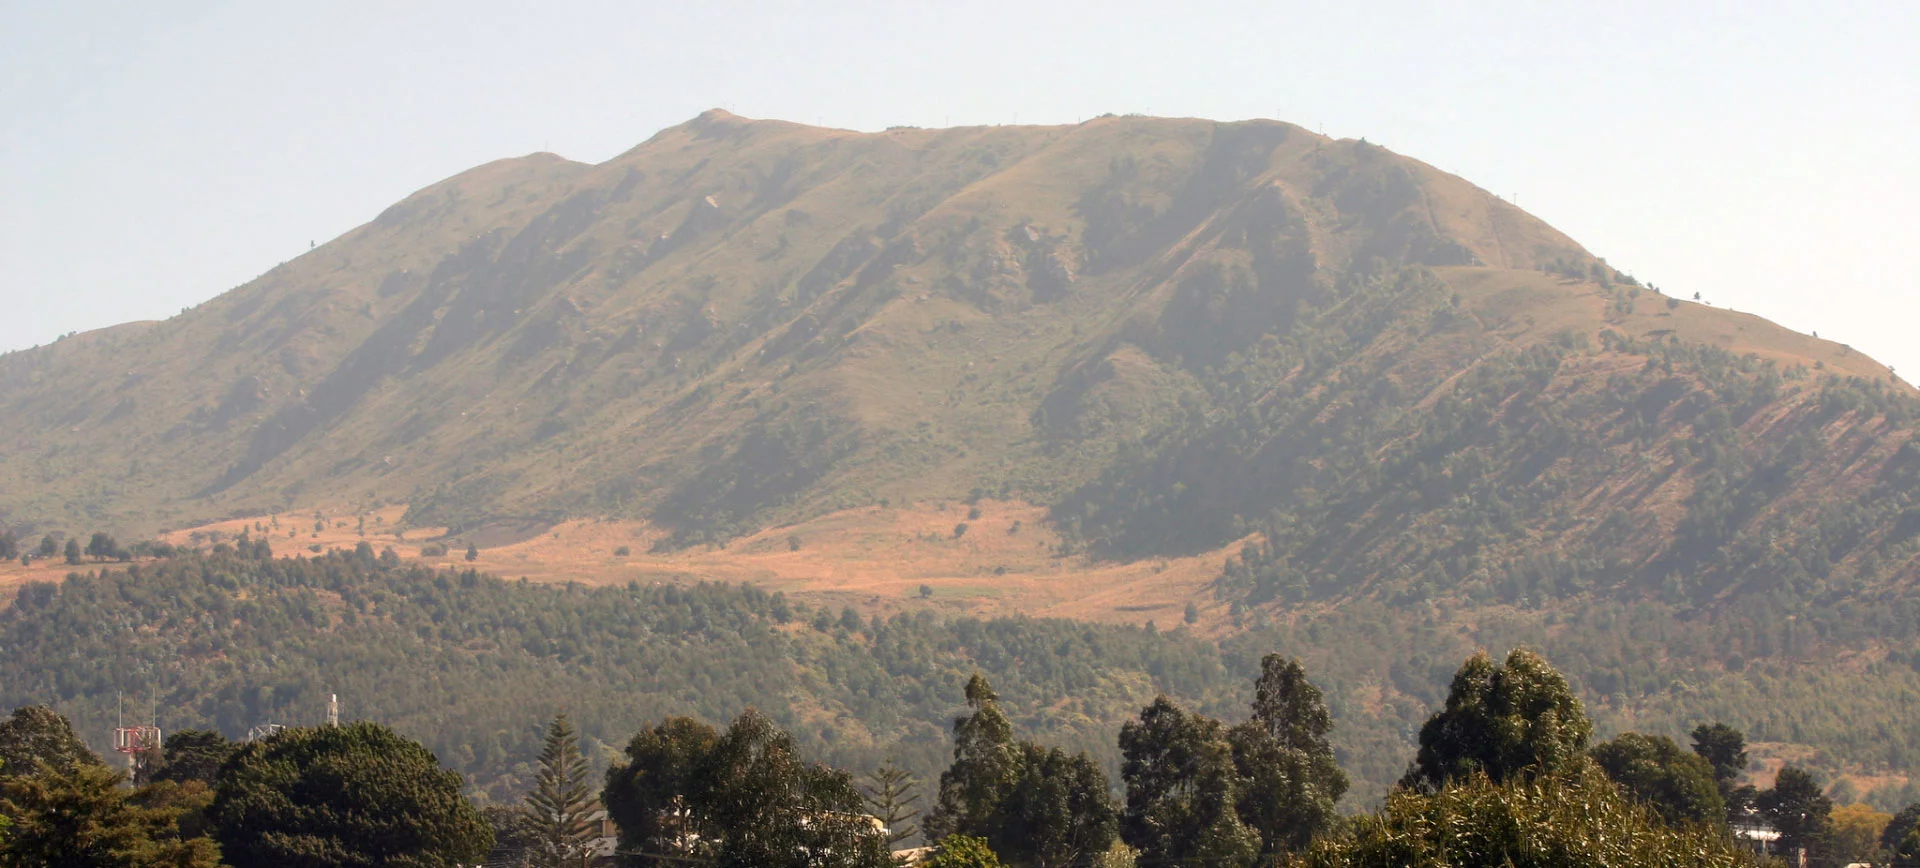 Mbeya Range